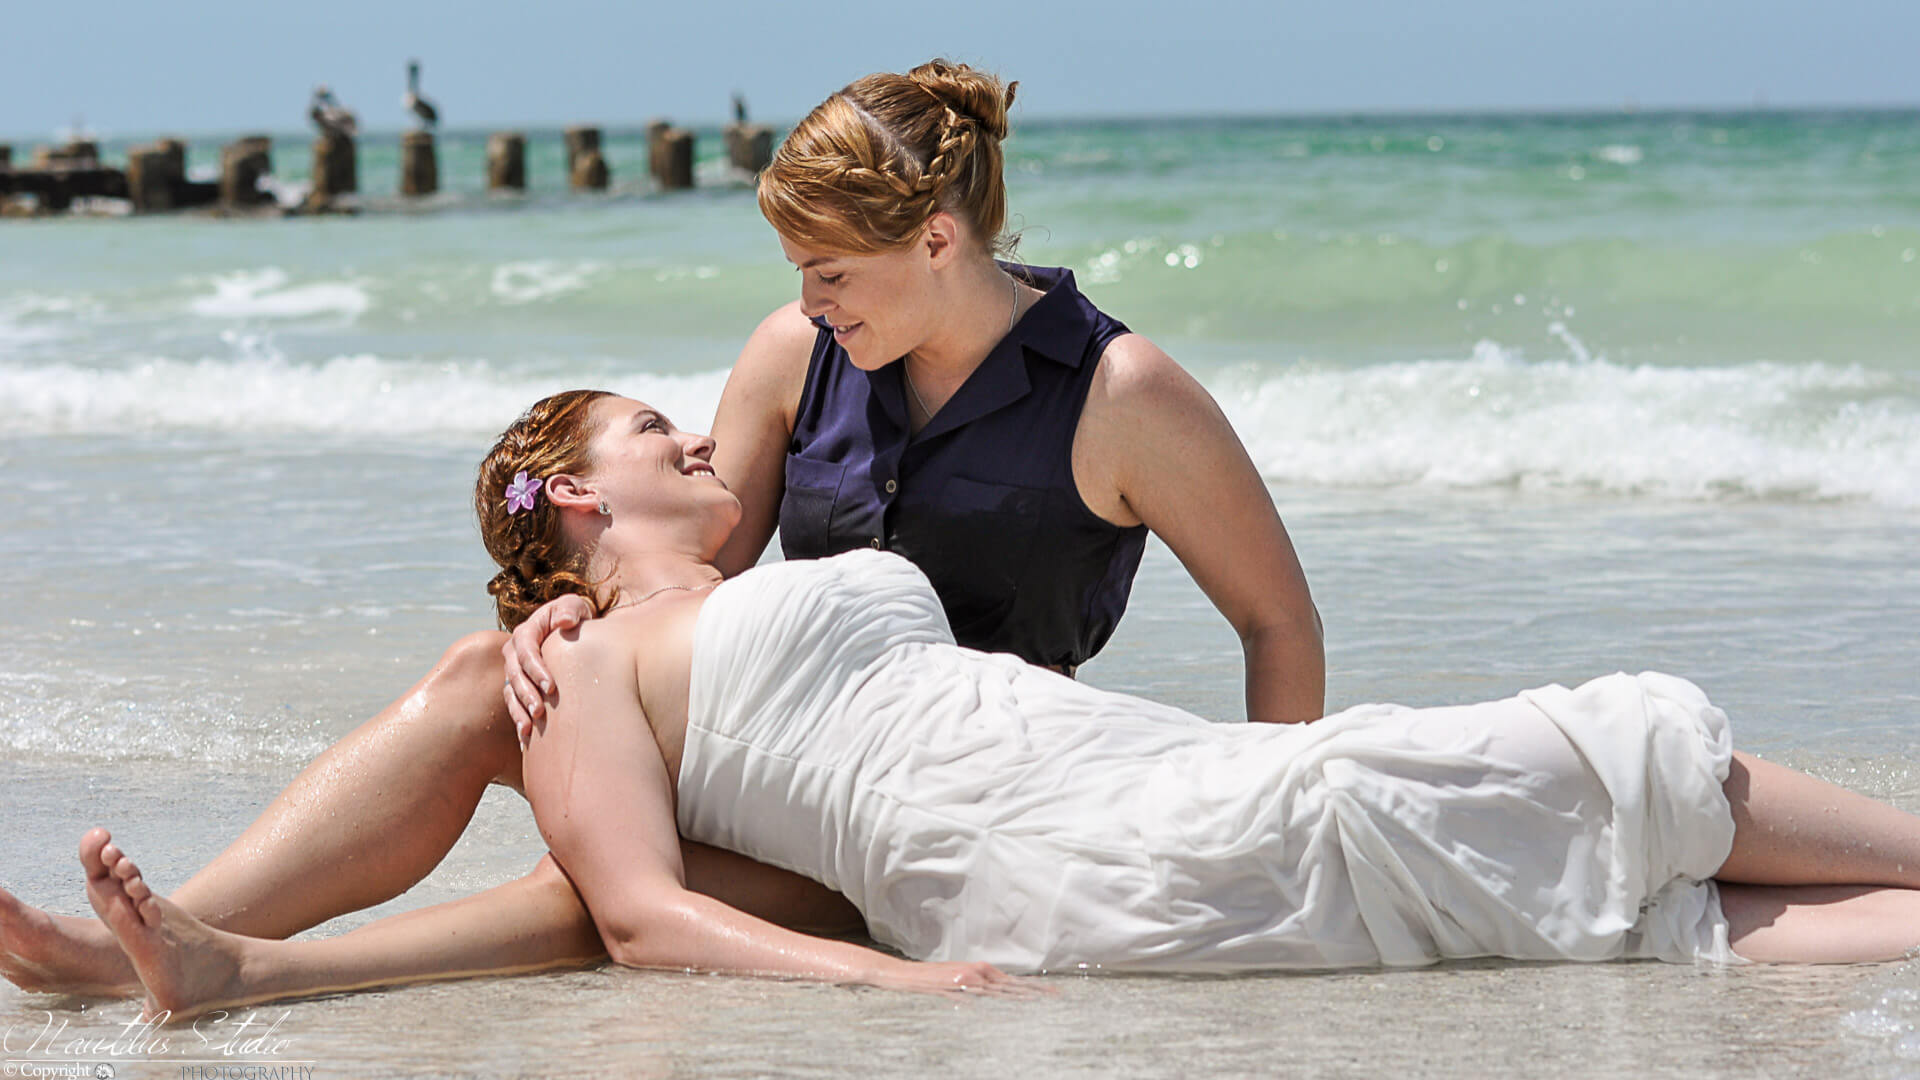 Boda del mismo sexo, boda del mismo sexo, dos mujeres yacen en la orilla del mar